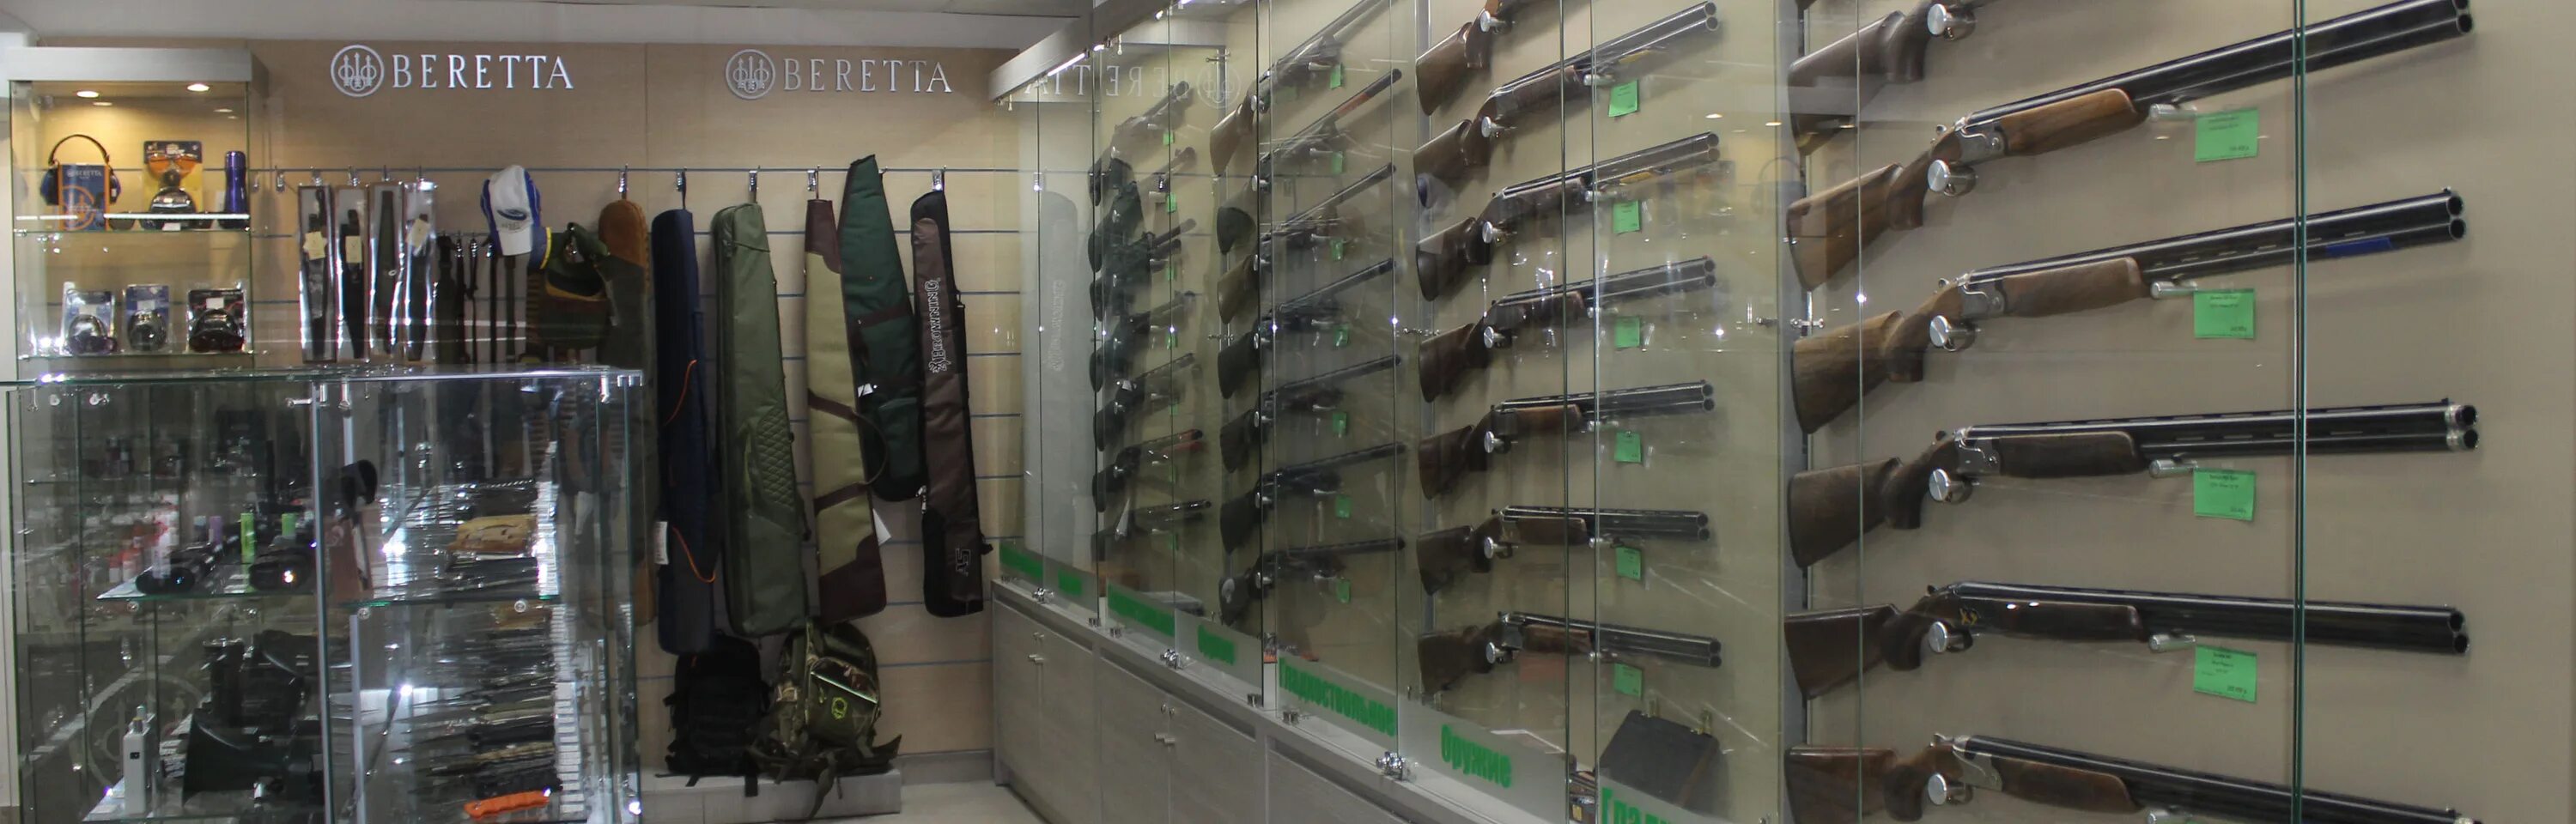 Beretta shop. Охотничьи магазины в Новосибирске. Магазин охота в Новосибирске. Охотничий магазин 1 в Новосибирске.